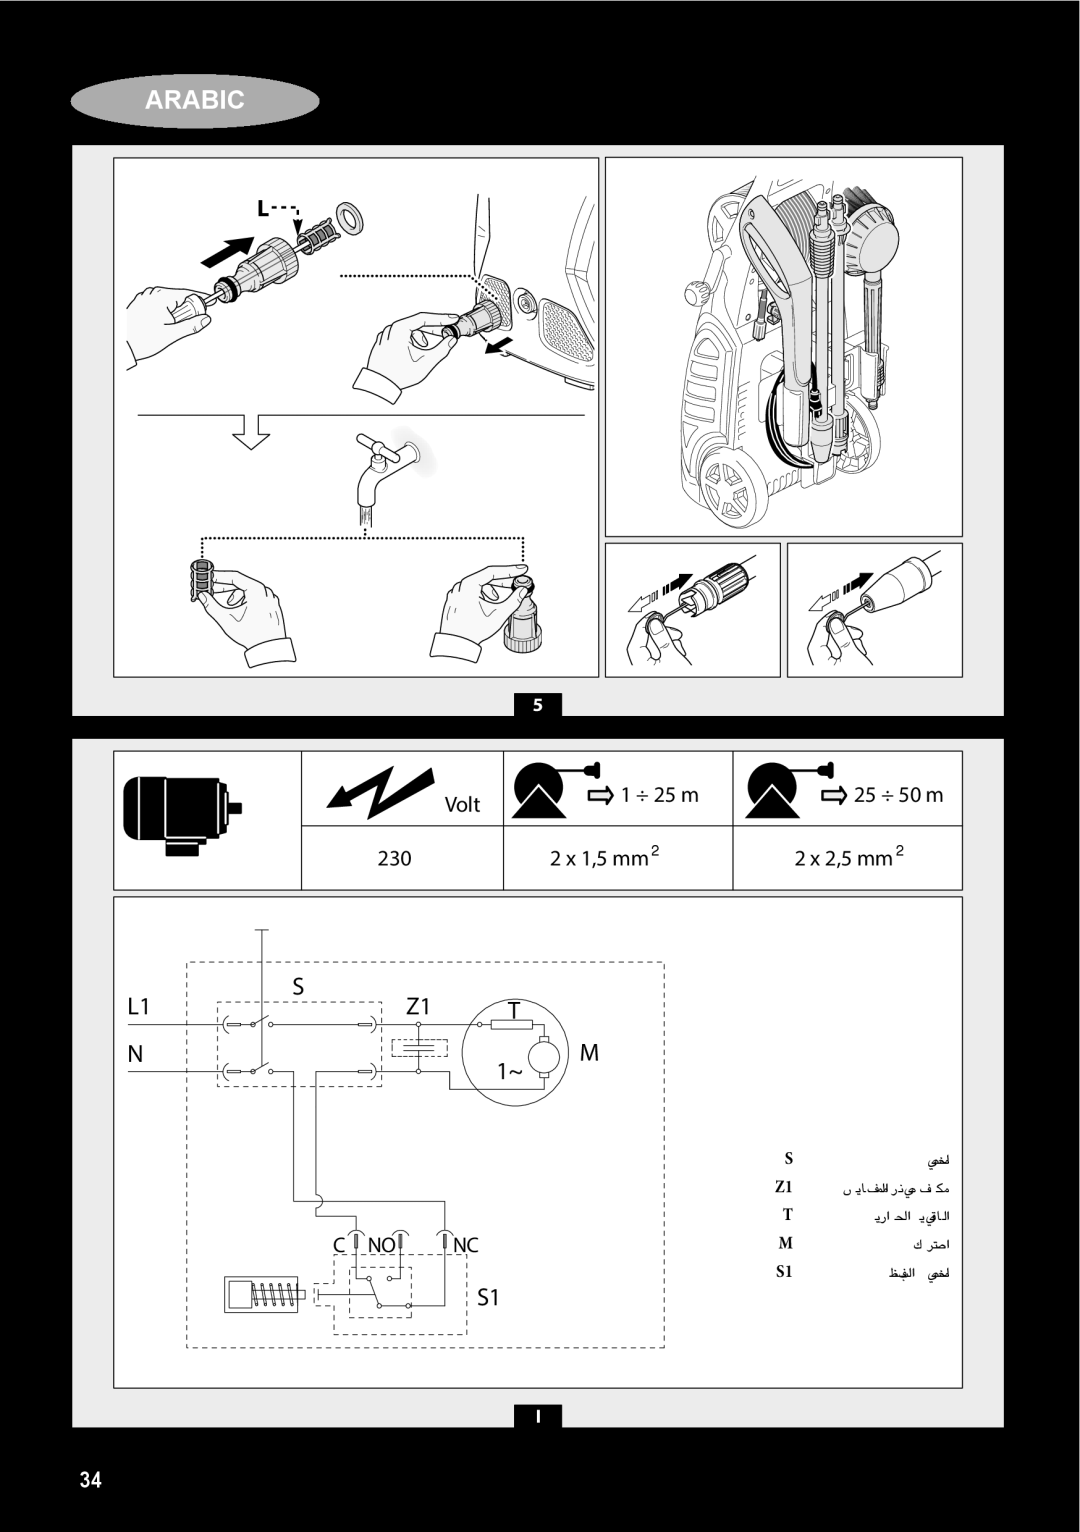 Black & Decker PW1700SPM manual Arabic, 2 x 2,5 mm, ájQGôG ájÉbƒdG, ∑ôëŸG, §¨†dG ìÉàØe 